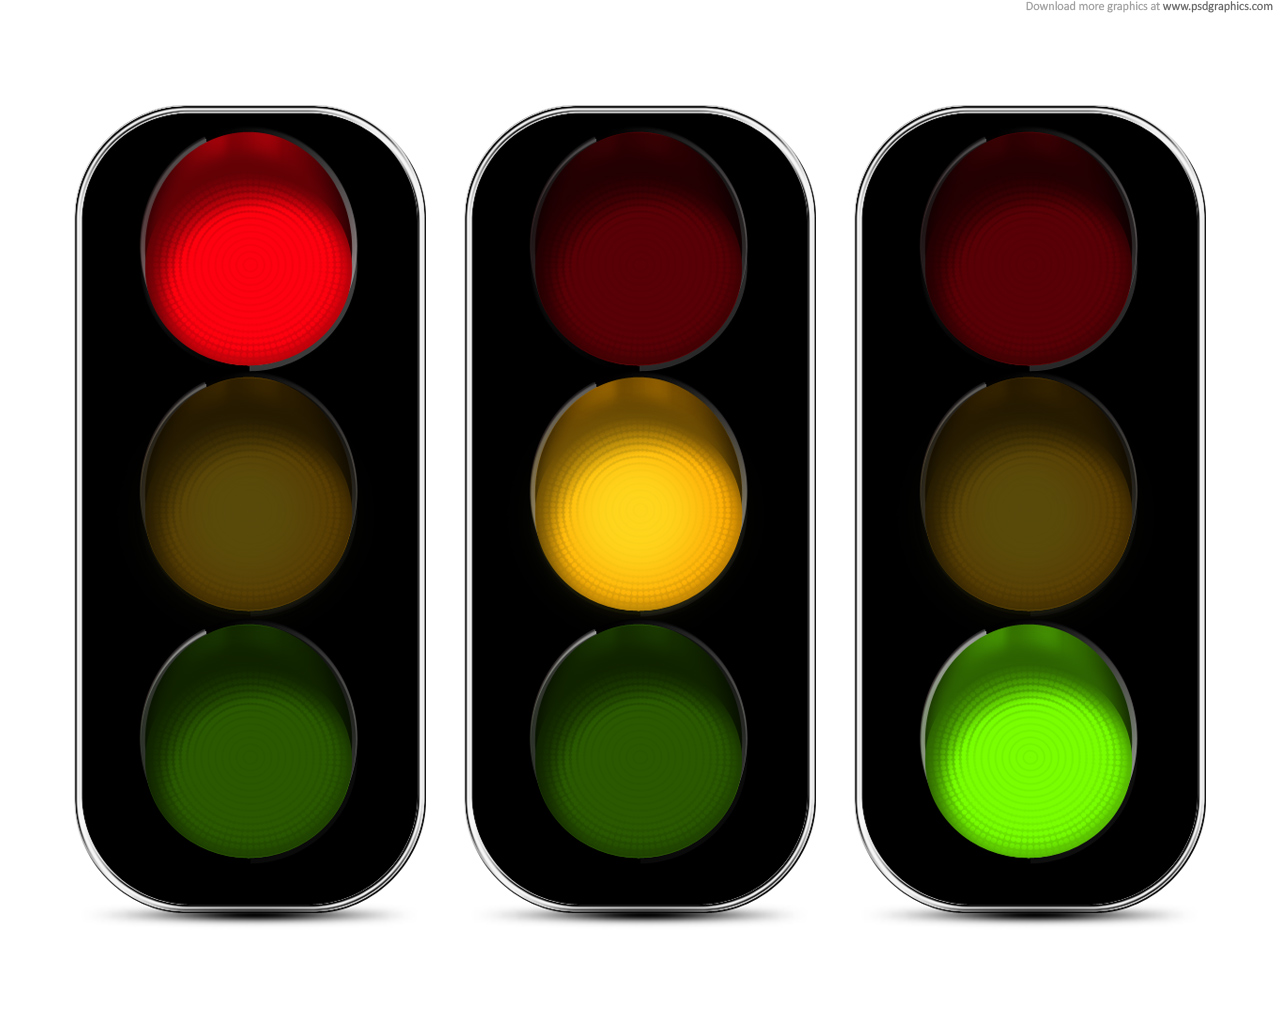 Traffic Light Clip Art At Clk